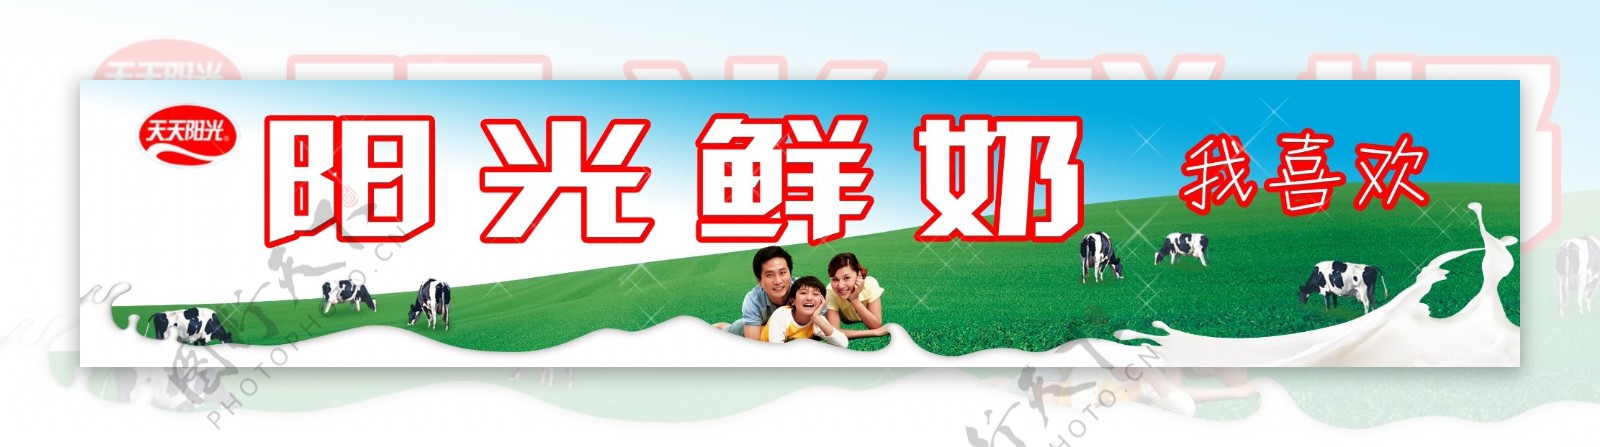 阳光牛奶户外宣传广告图片